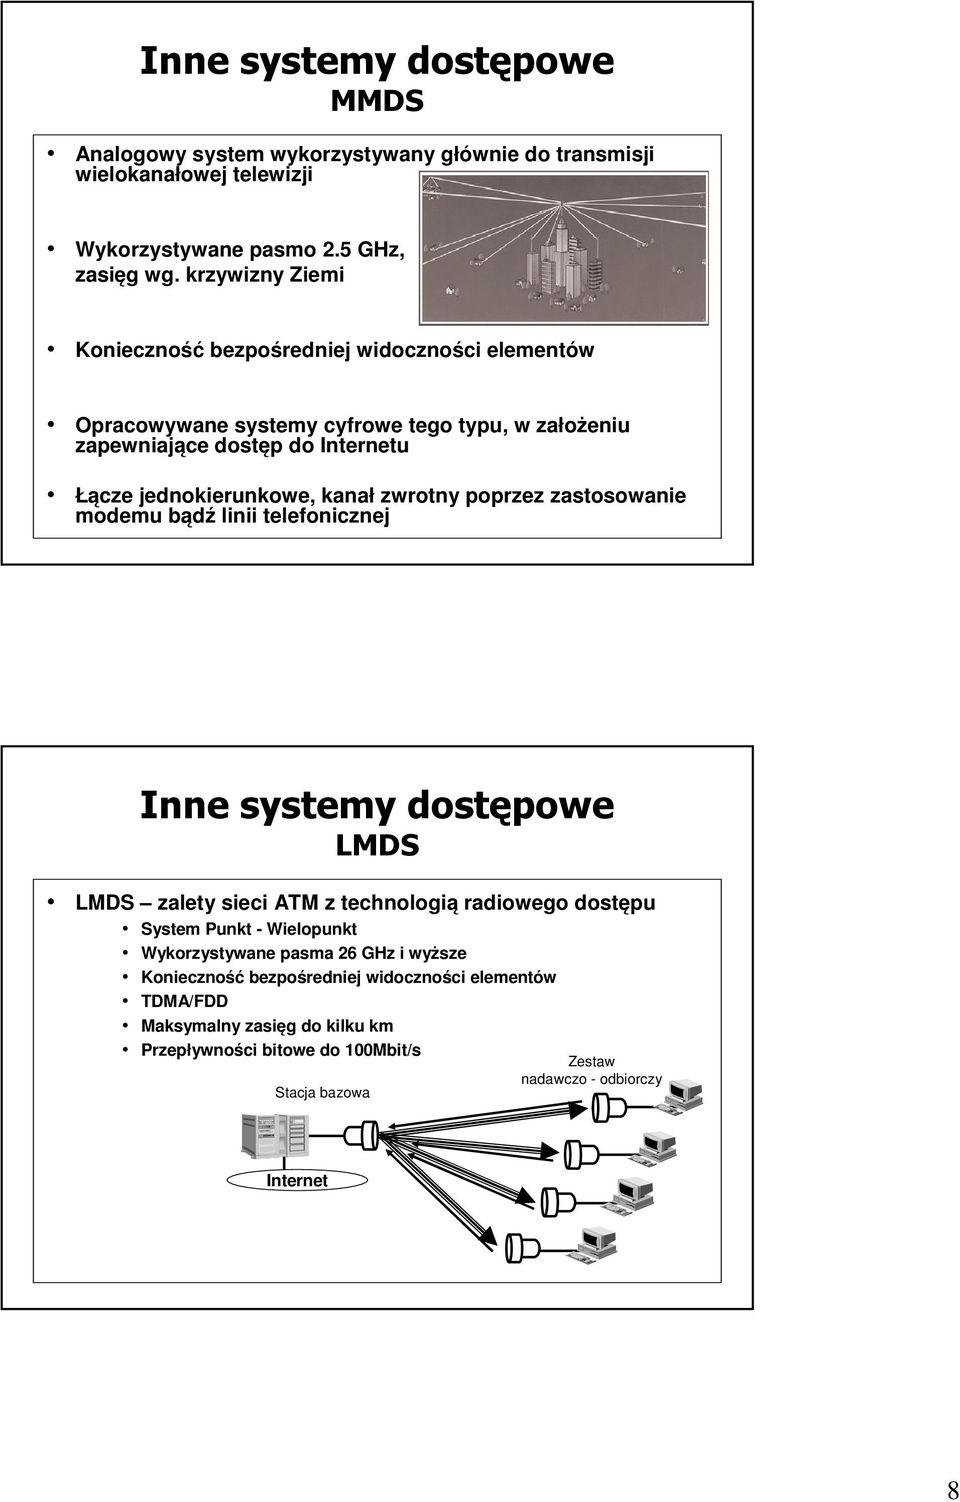 kanał zwrotny poprzez zastosowanie modemu bądź linii telefonicznej Inne systemy dostępowe LMDS LMDS zalety sieci ATM z technologią radiowego dostępu System Punkt - Wielopunkt